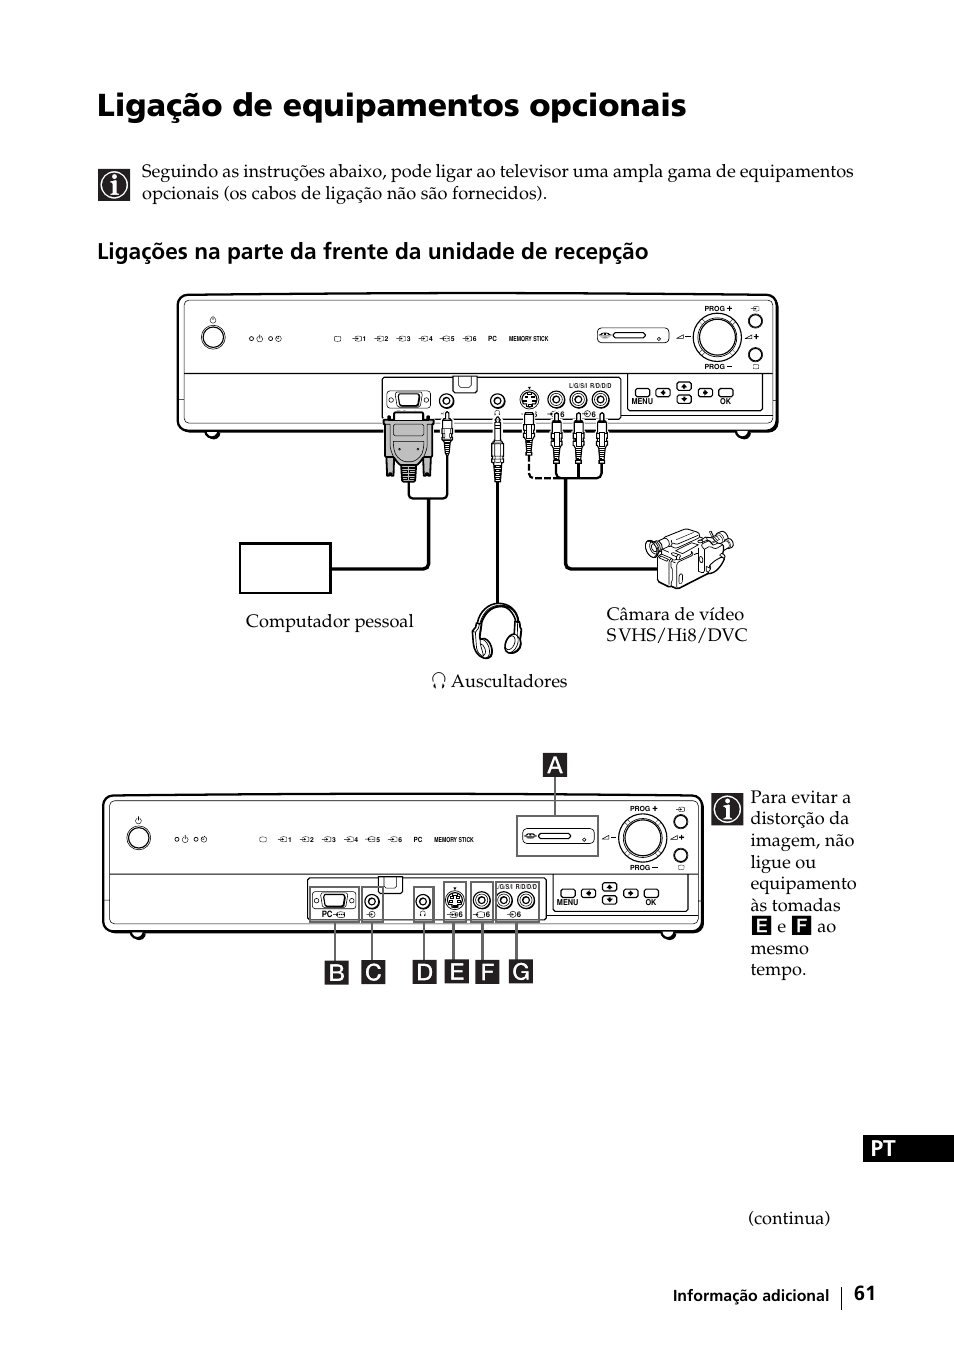 Ligação de equipamentos opcionais, Ligações na parte da frente da unidade de recepção, Continua) | Informação adicional | Sony KE-42MR1 Manuale d'uso | Pagina 212 / 302